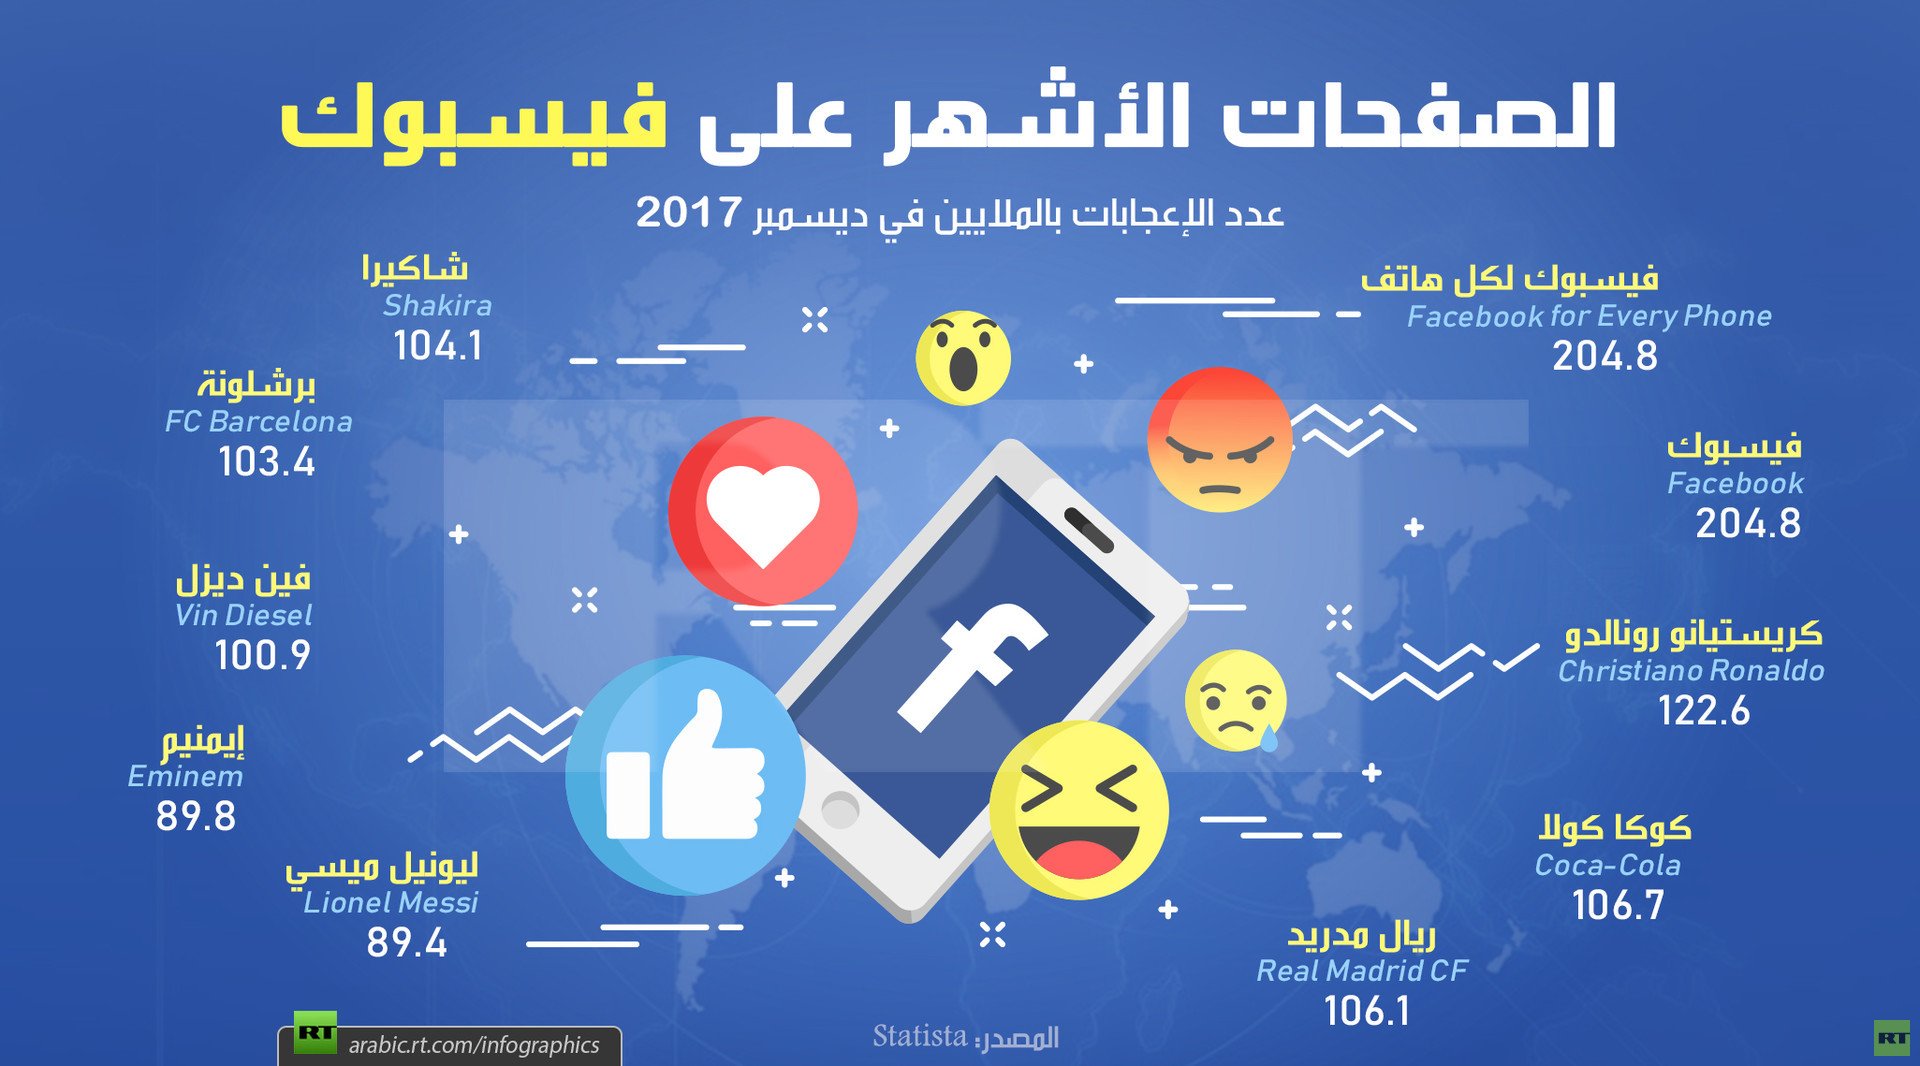 الصفحات الأشهر على فيسبوك في 2017